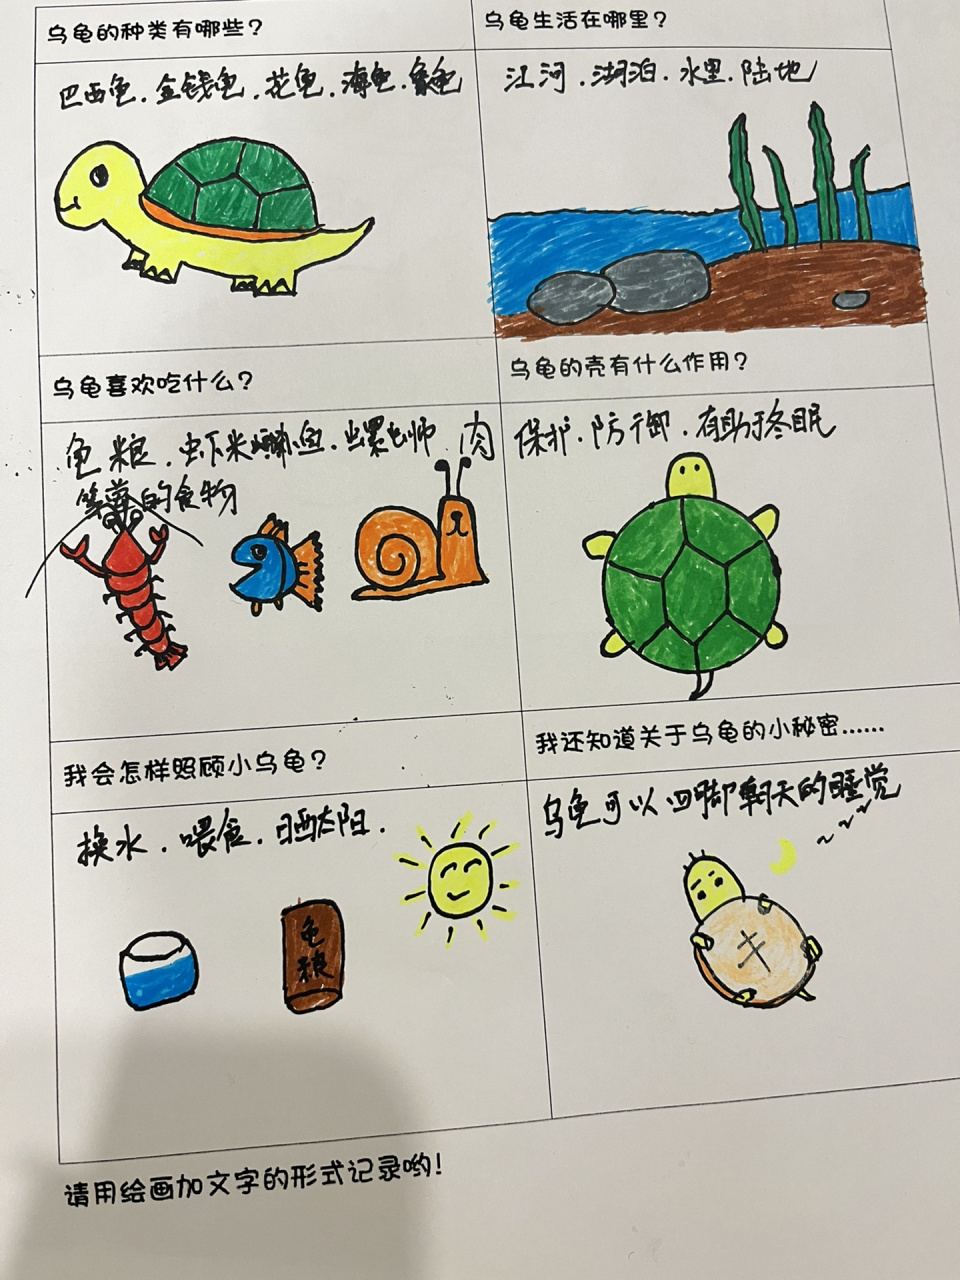 小乌龟调查表  幼儿园作业小乌龟调查表,使用毕生绝学终于完成了